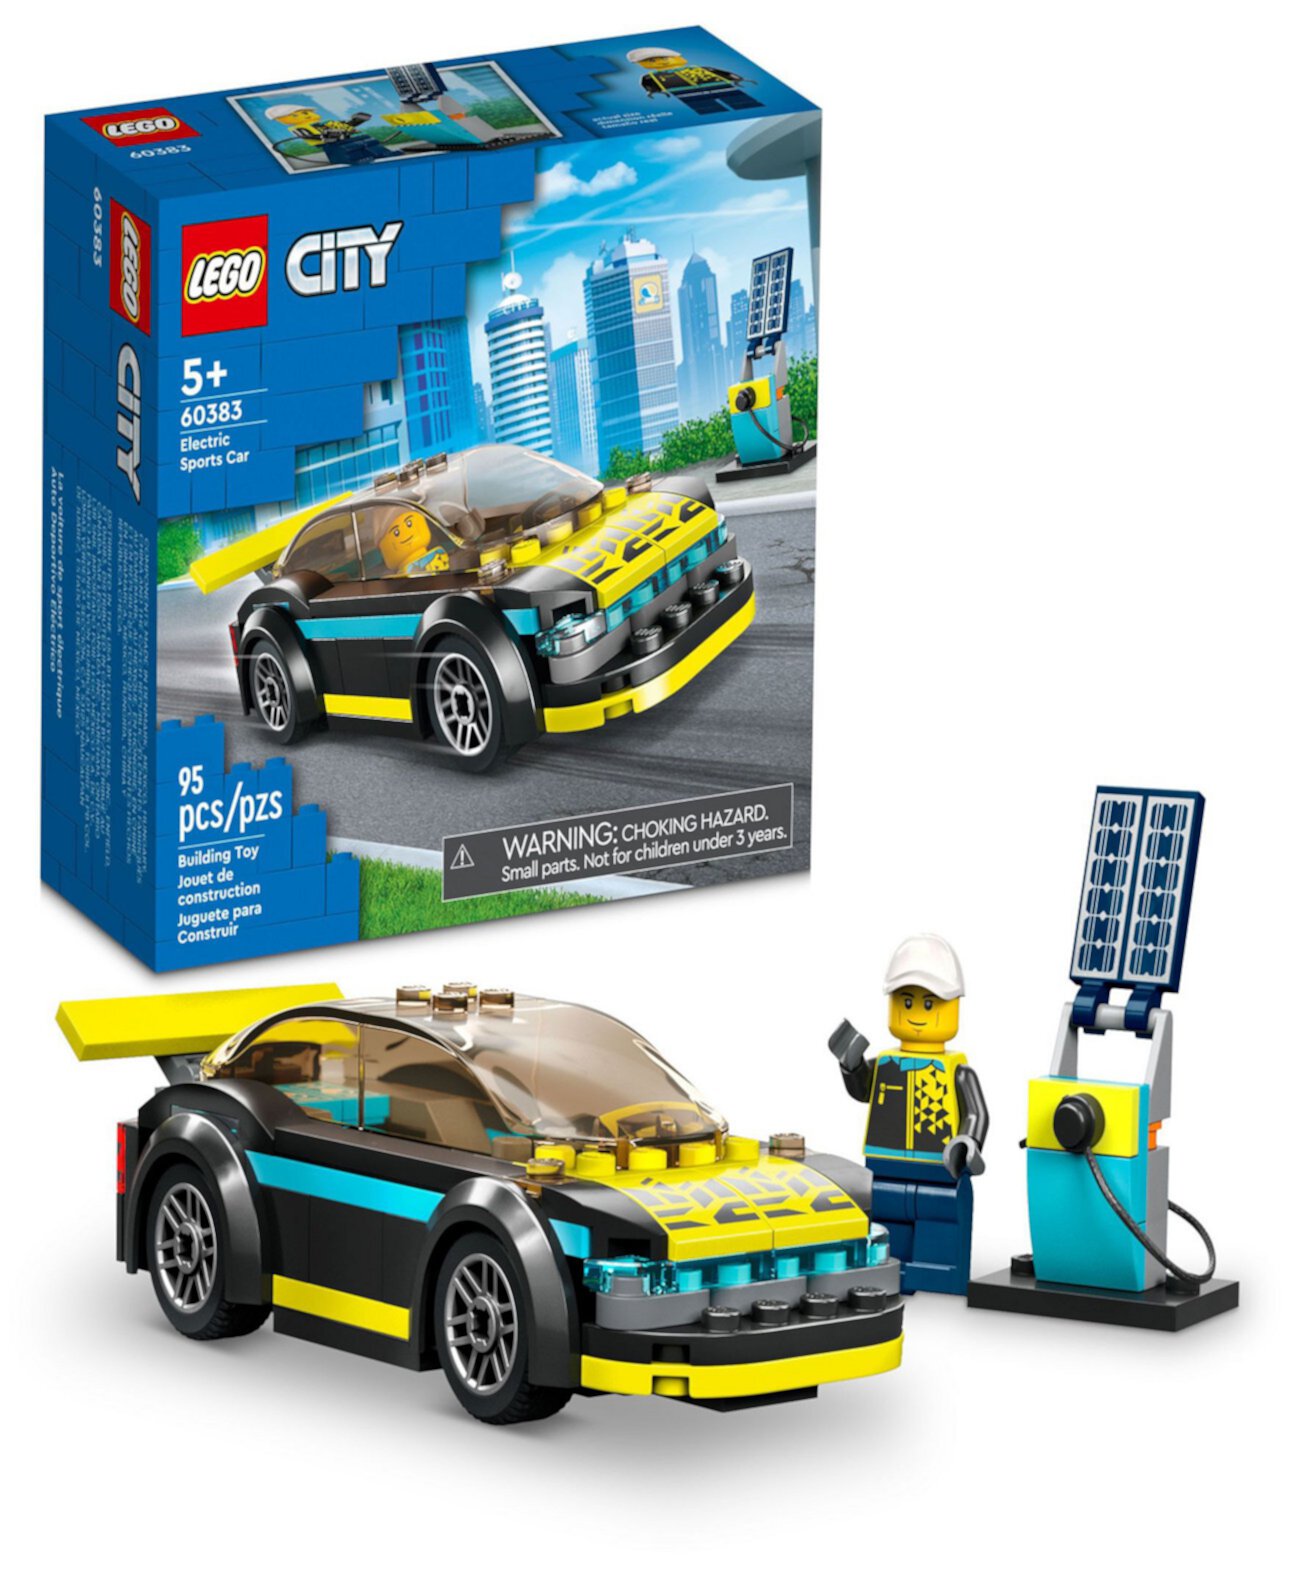 Модель спортивного электромобиля City Great Vehicles с минифигуркой 60383, набор игрушек Lego